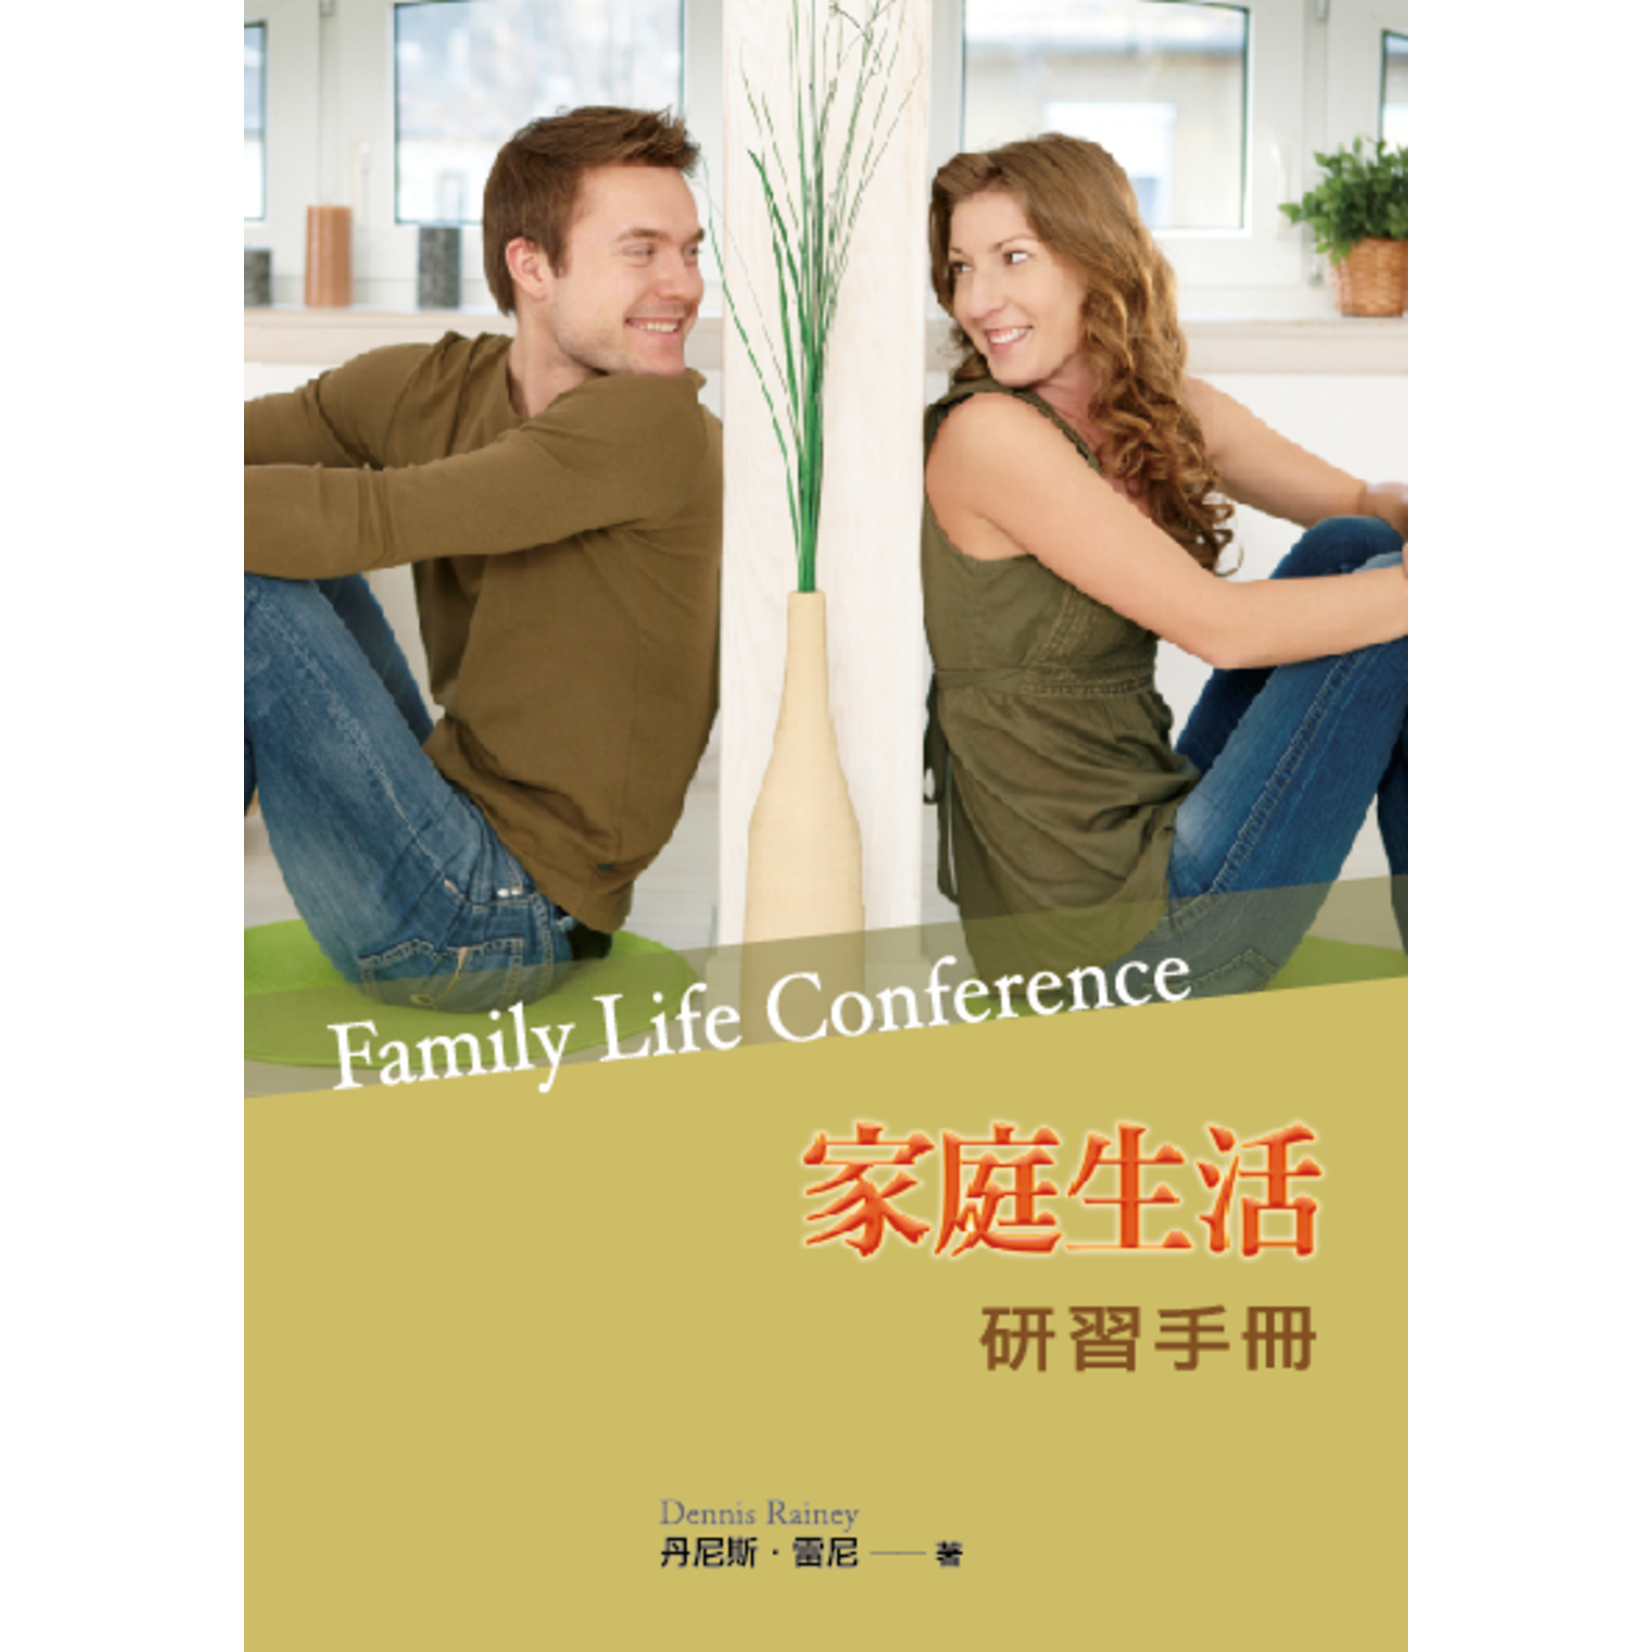 中國學園傳道會 Taiwan Campus Crusade for Christ 家庭生活研習手冊 Family Life Course Mauel